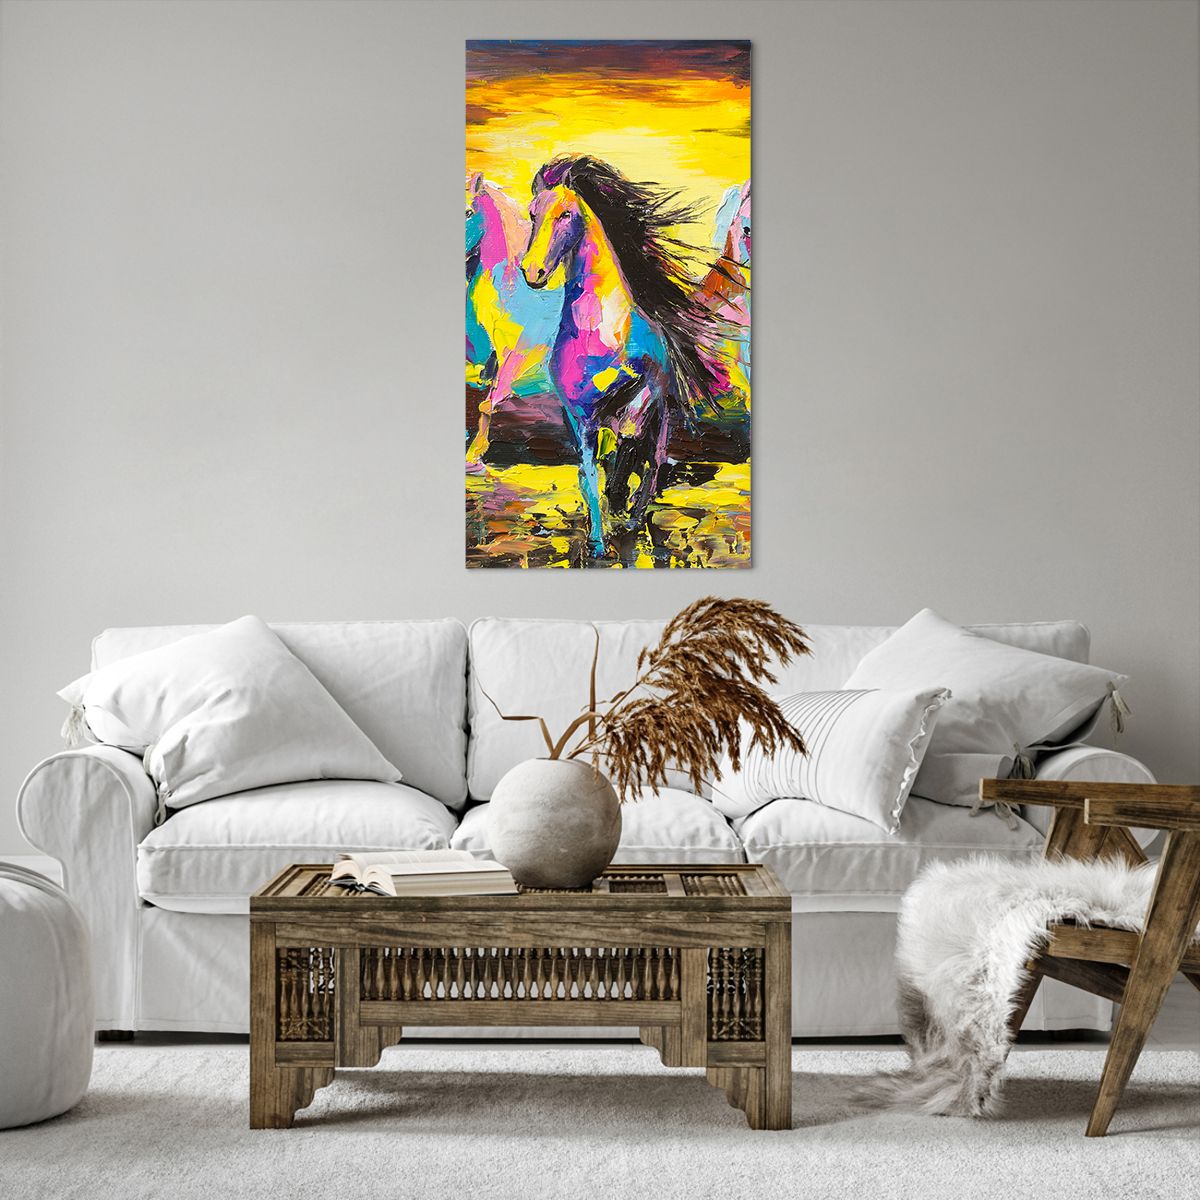 Bild auf Leinwand Tiere, Bild auf Leinwand Die Pferde, Bild auf Leinwand Freiheit, Bild auf Leinwand Kunst, Bild auf Leinwand Abstraktion